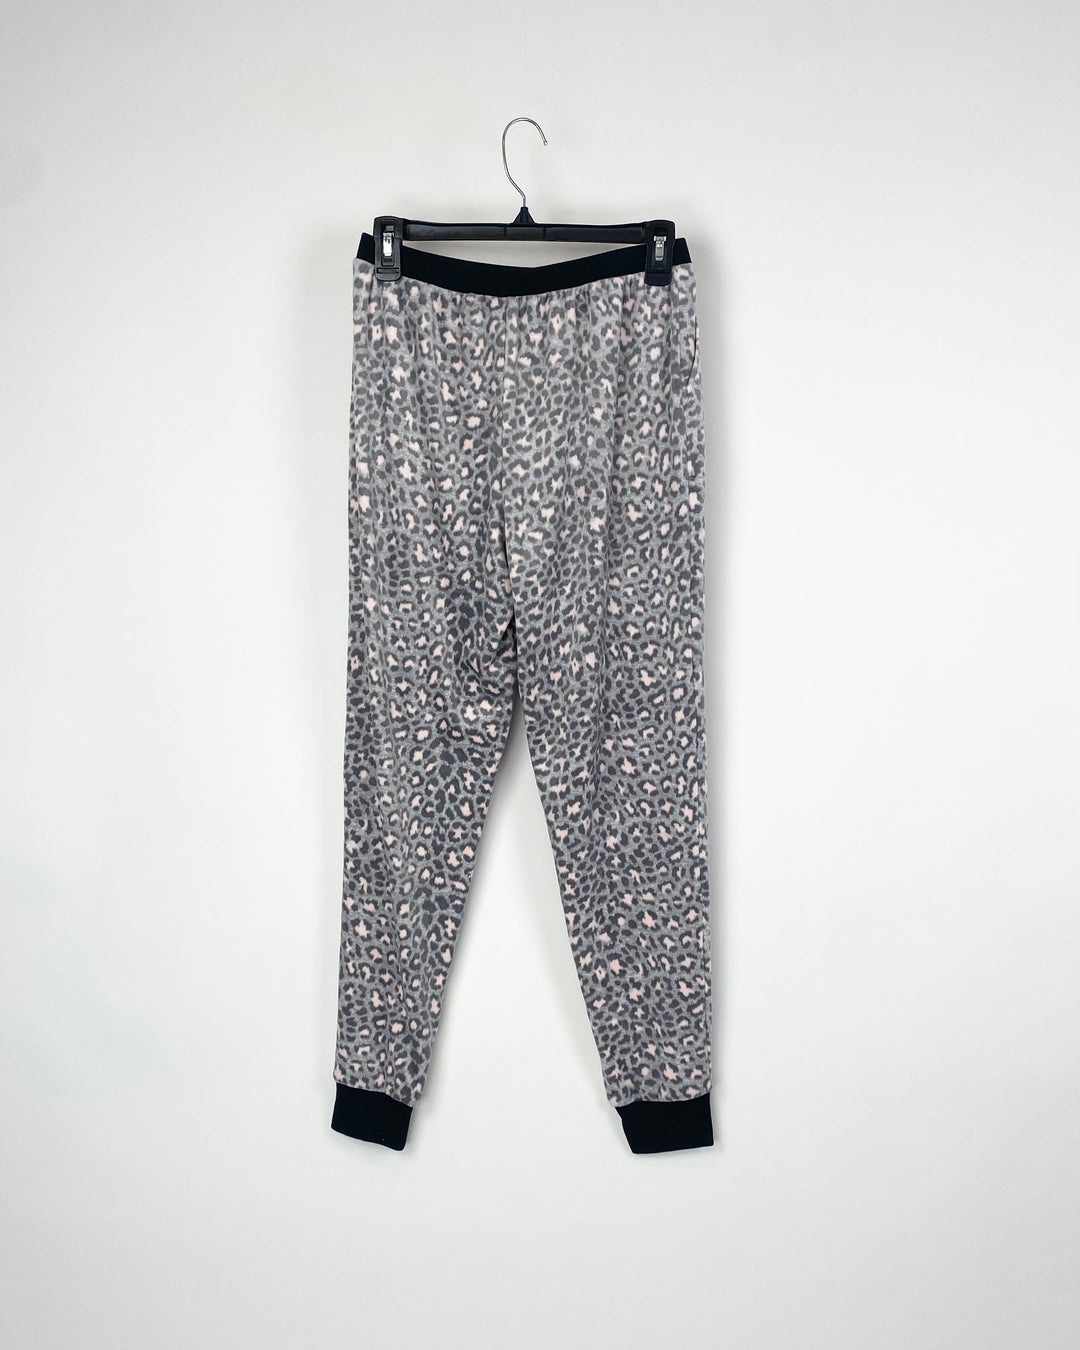 Grey Cheetah Print Pajama Pants - Small